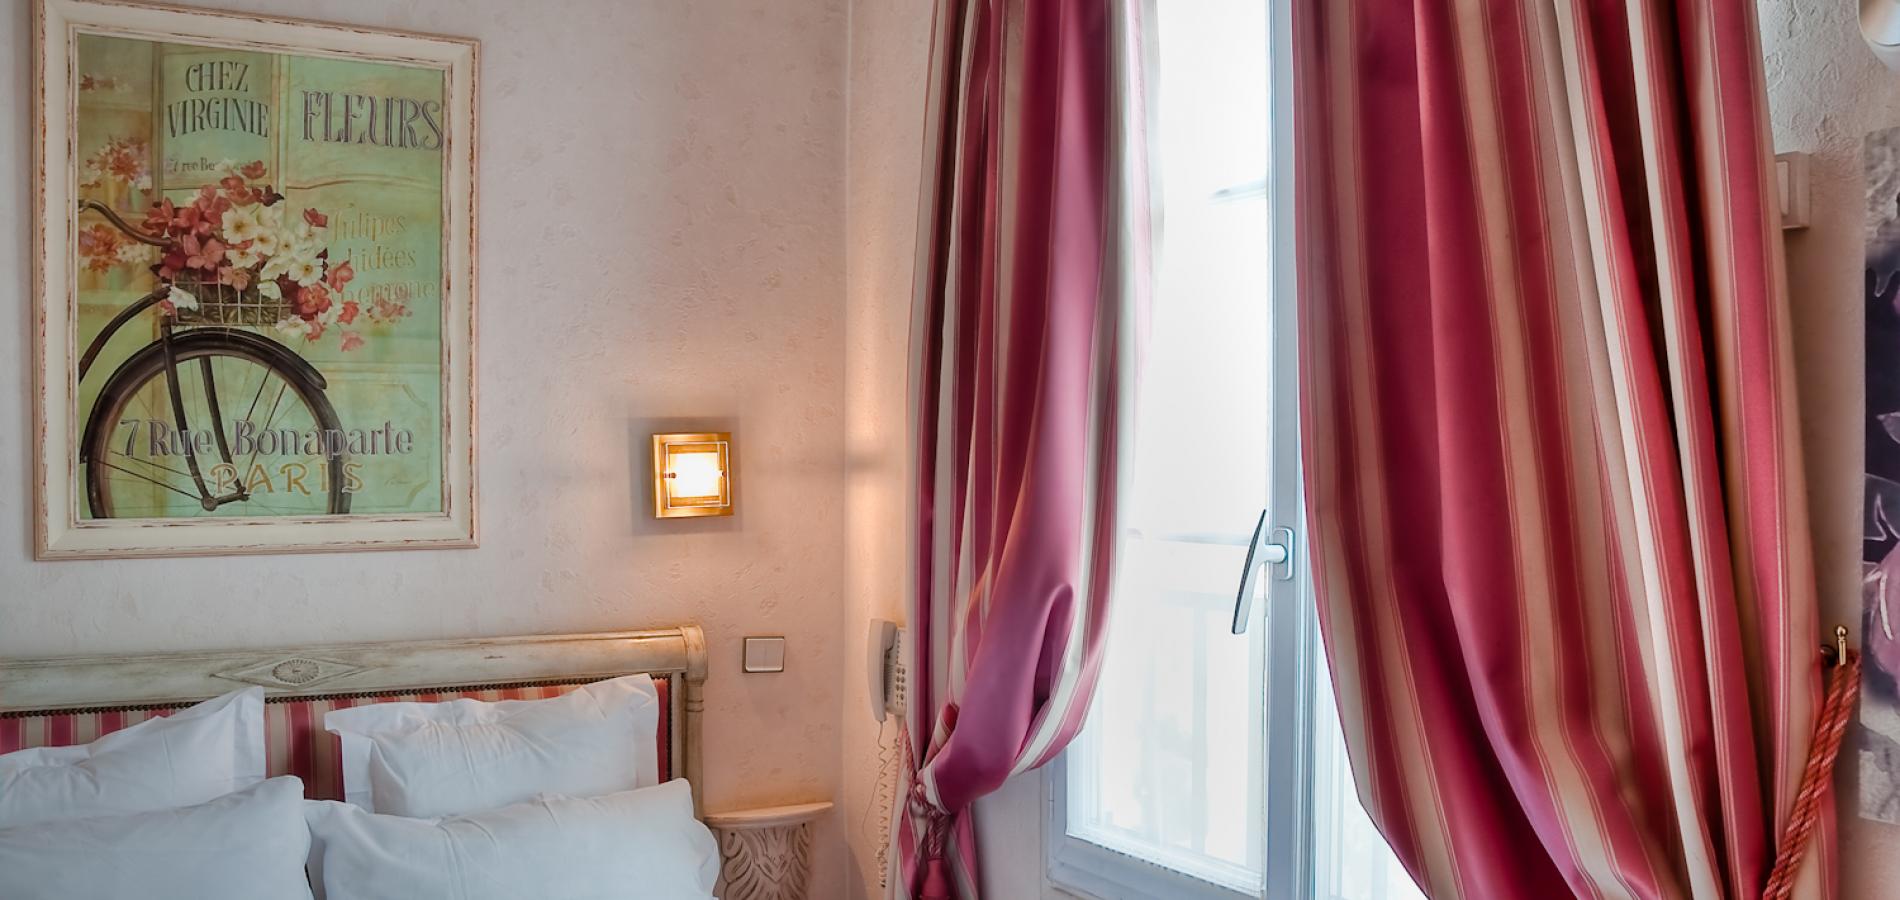 Hôtel La Motte Picquet - Room